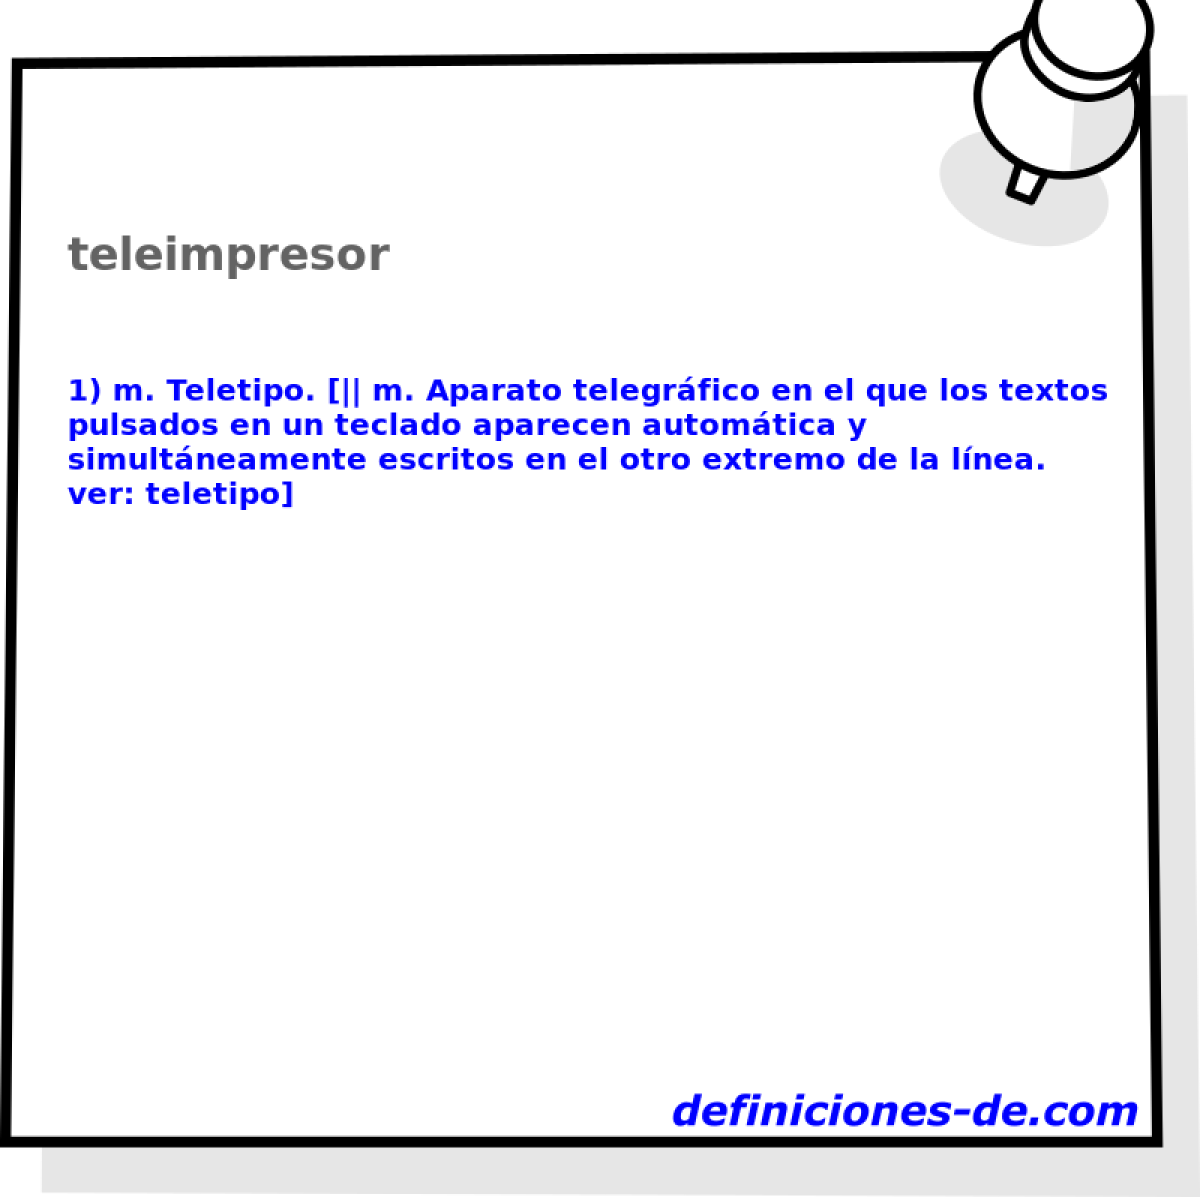 teleimpresor 